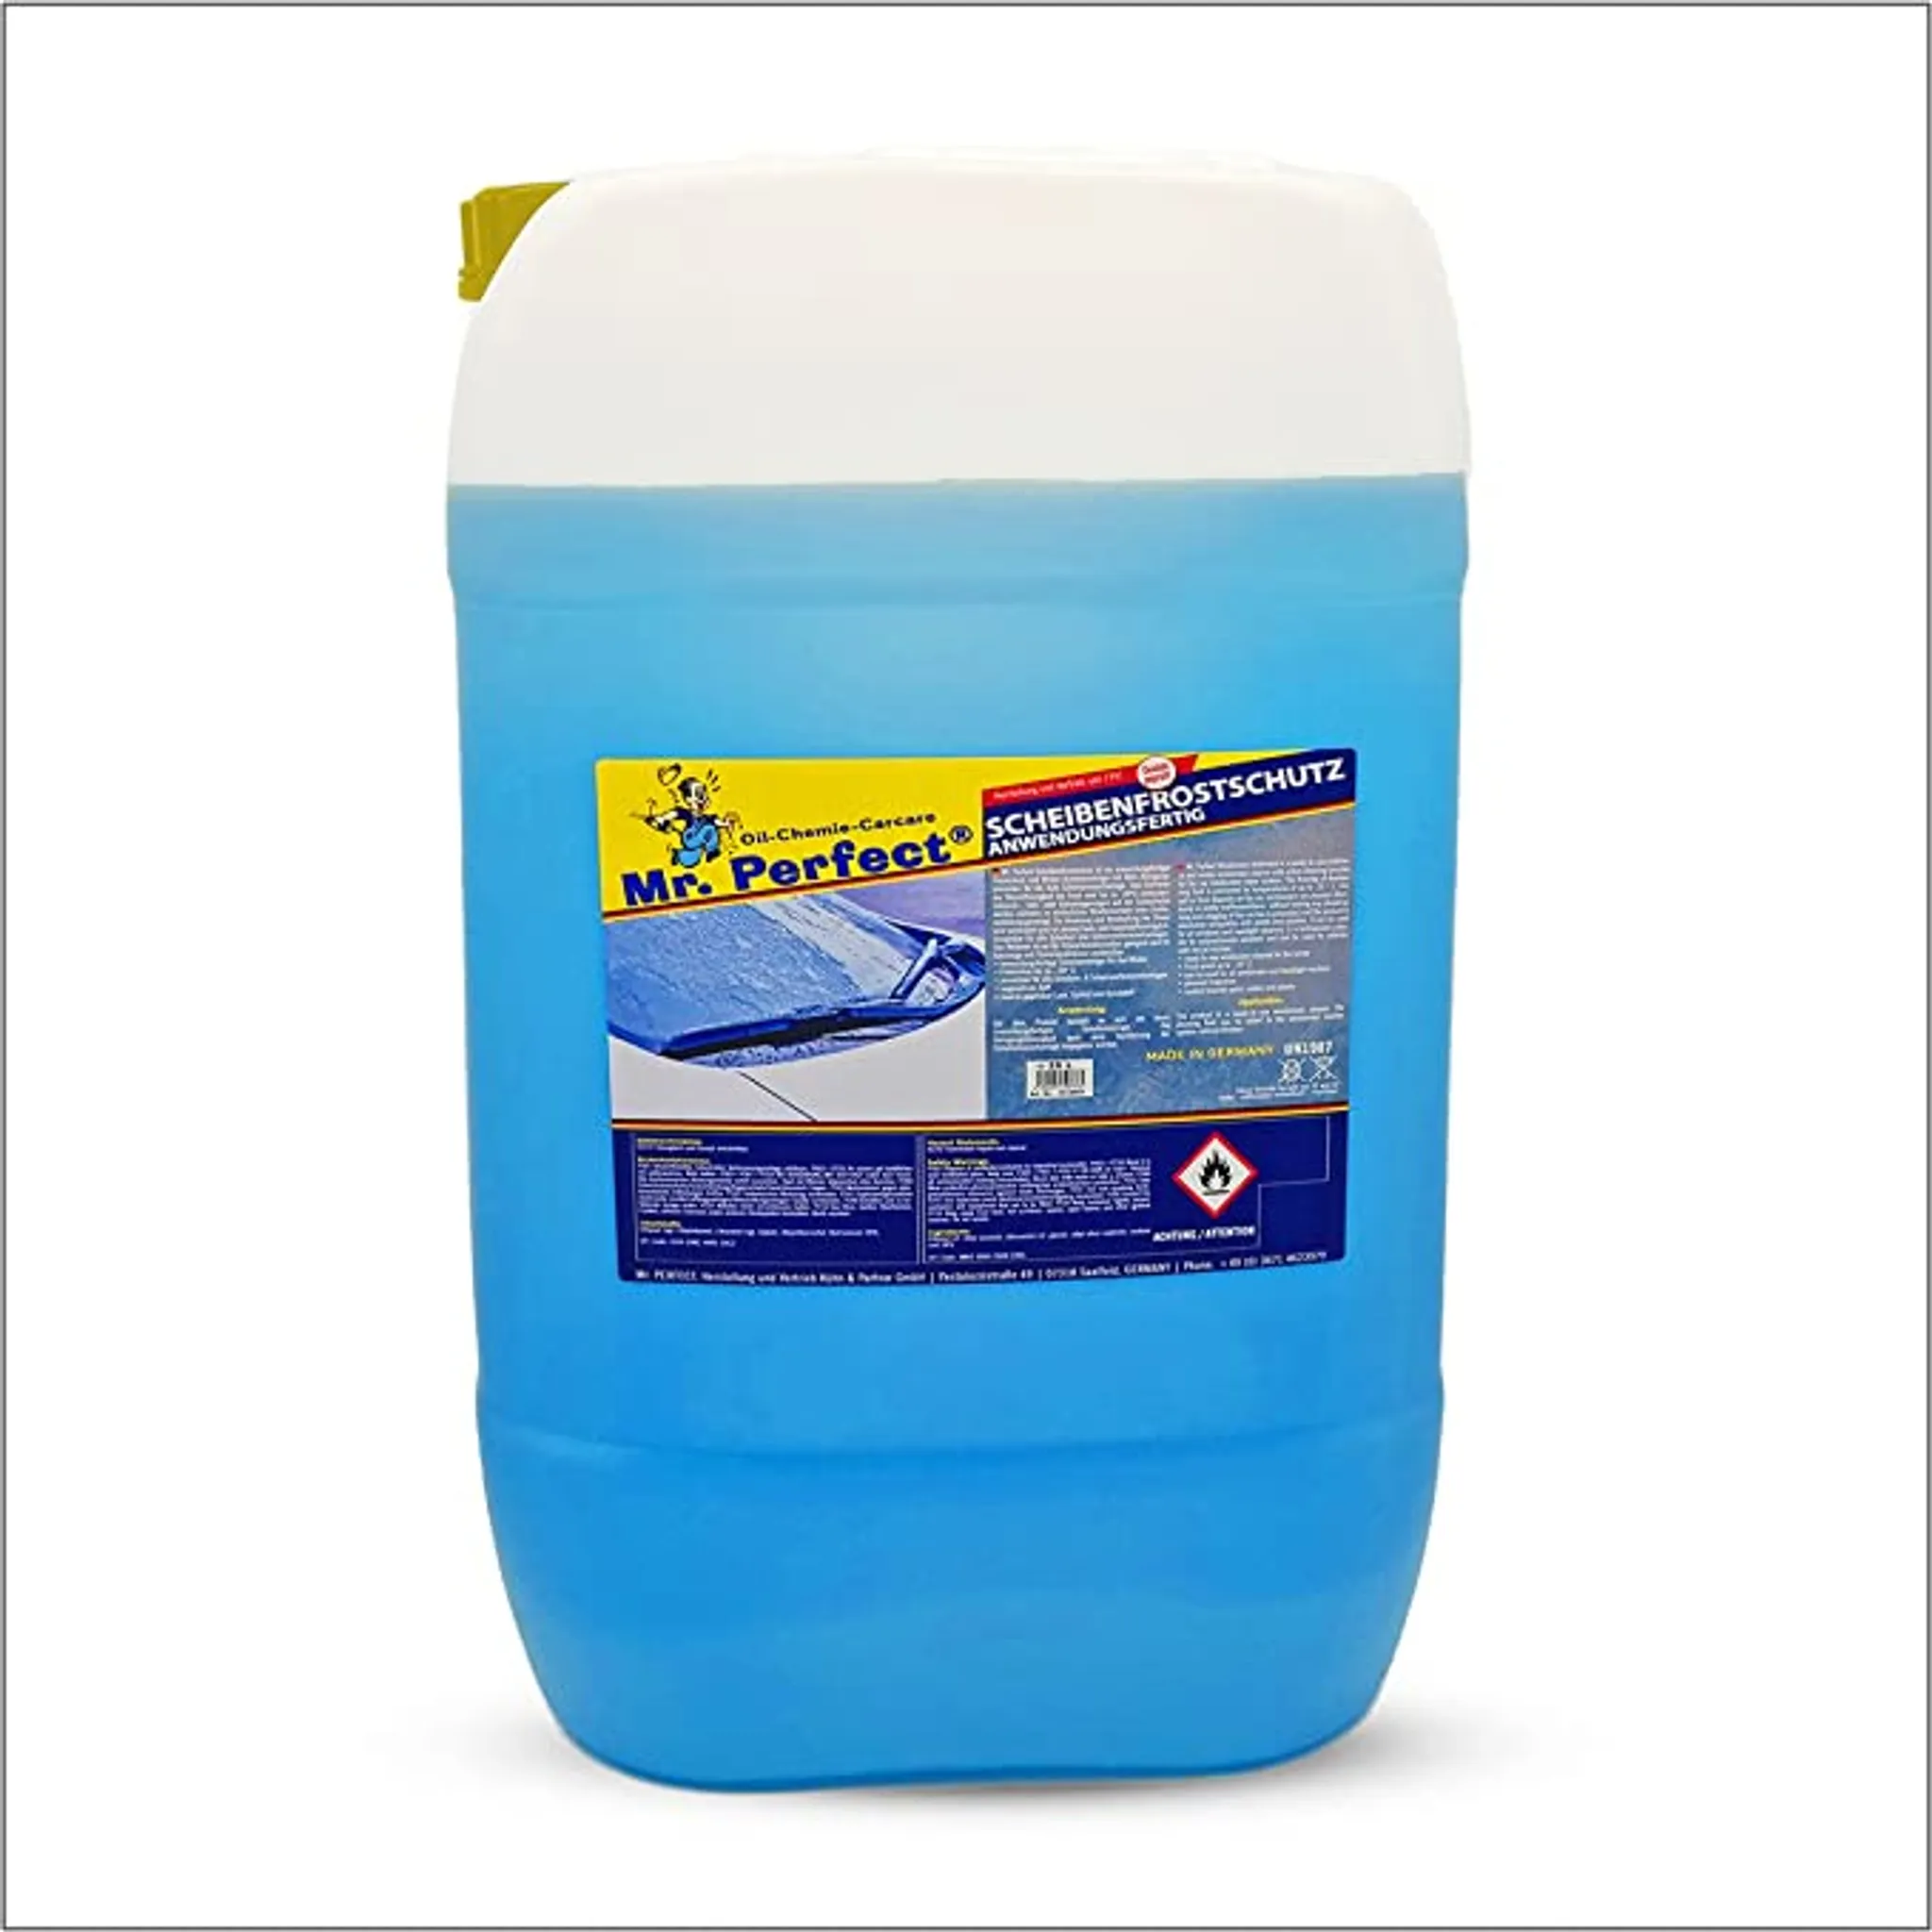 Mr. Perfect® Frostschutzmittel für Windschutzscheiben, 25L - für Wischwasser  bis -20°C